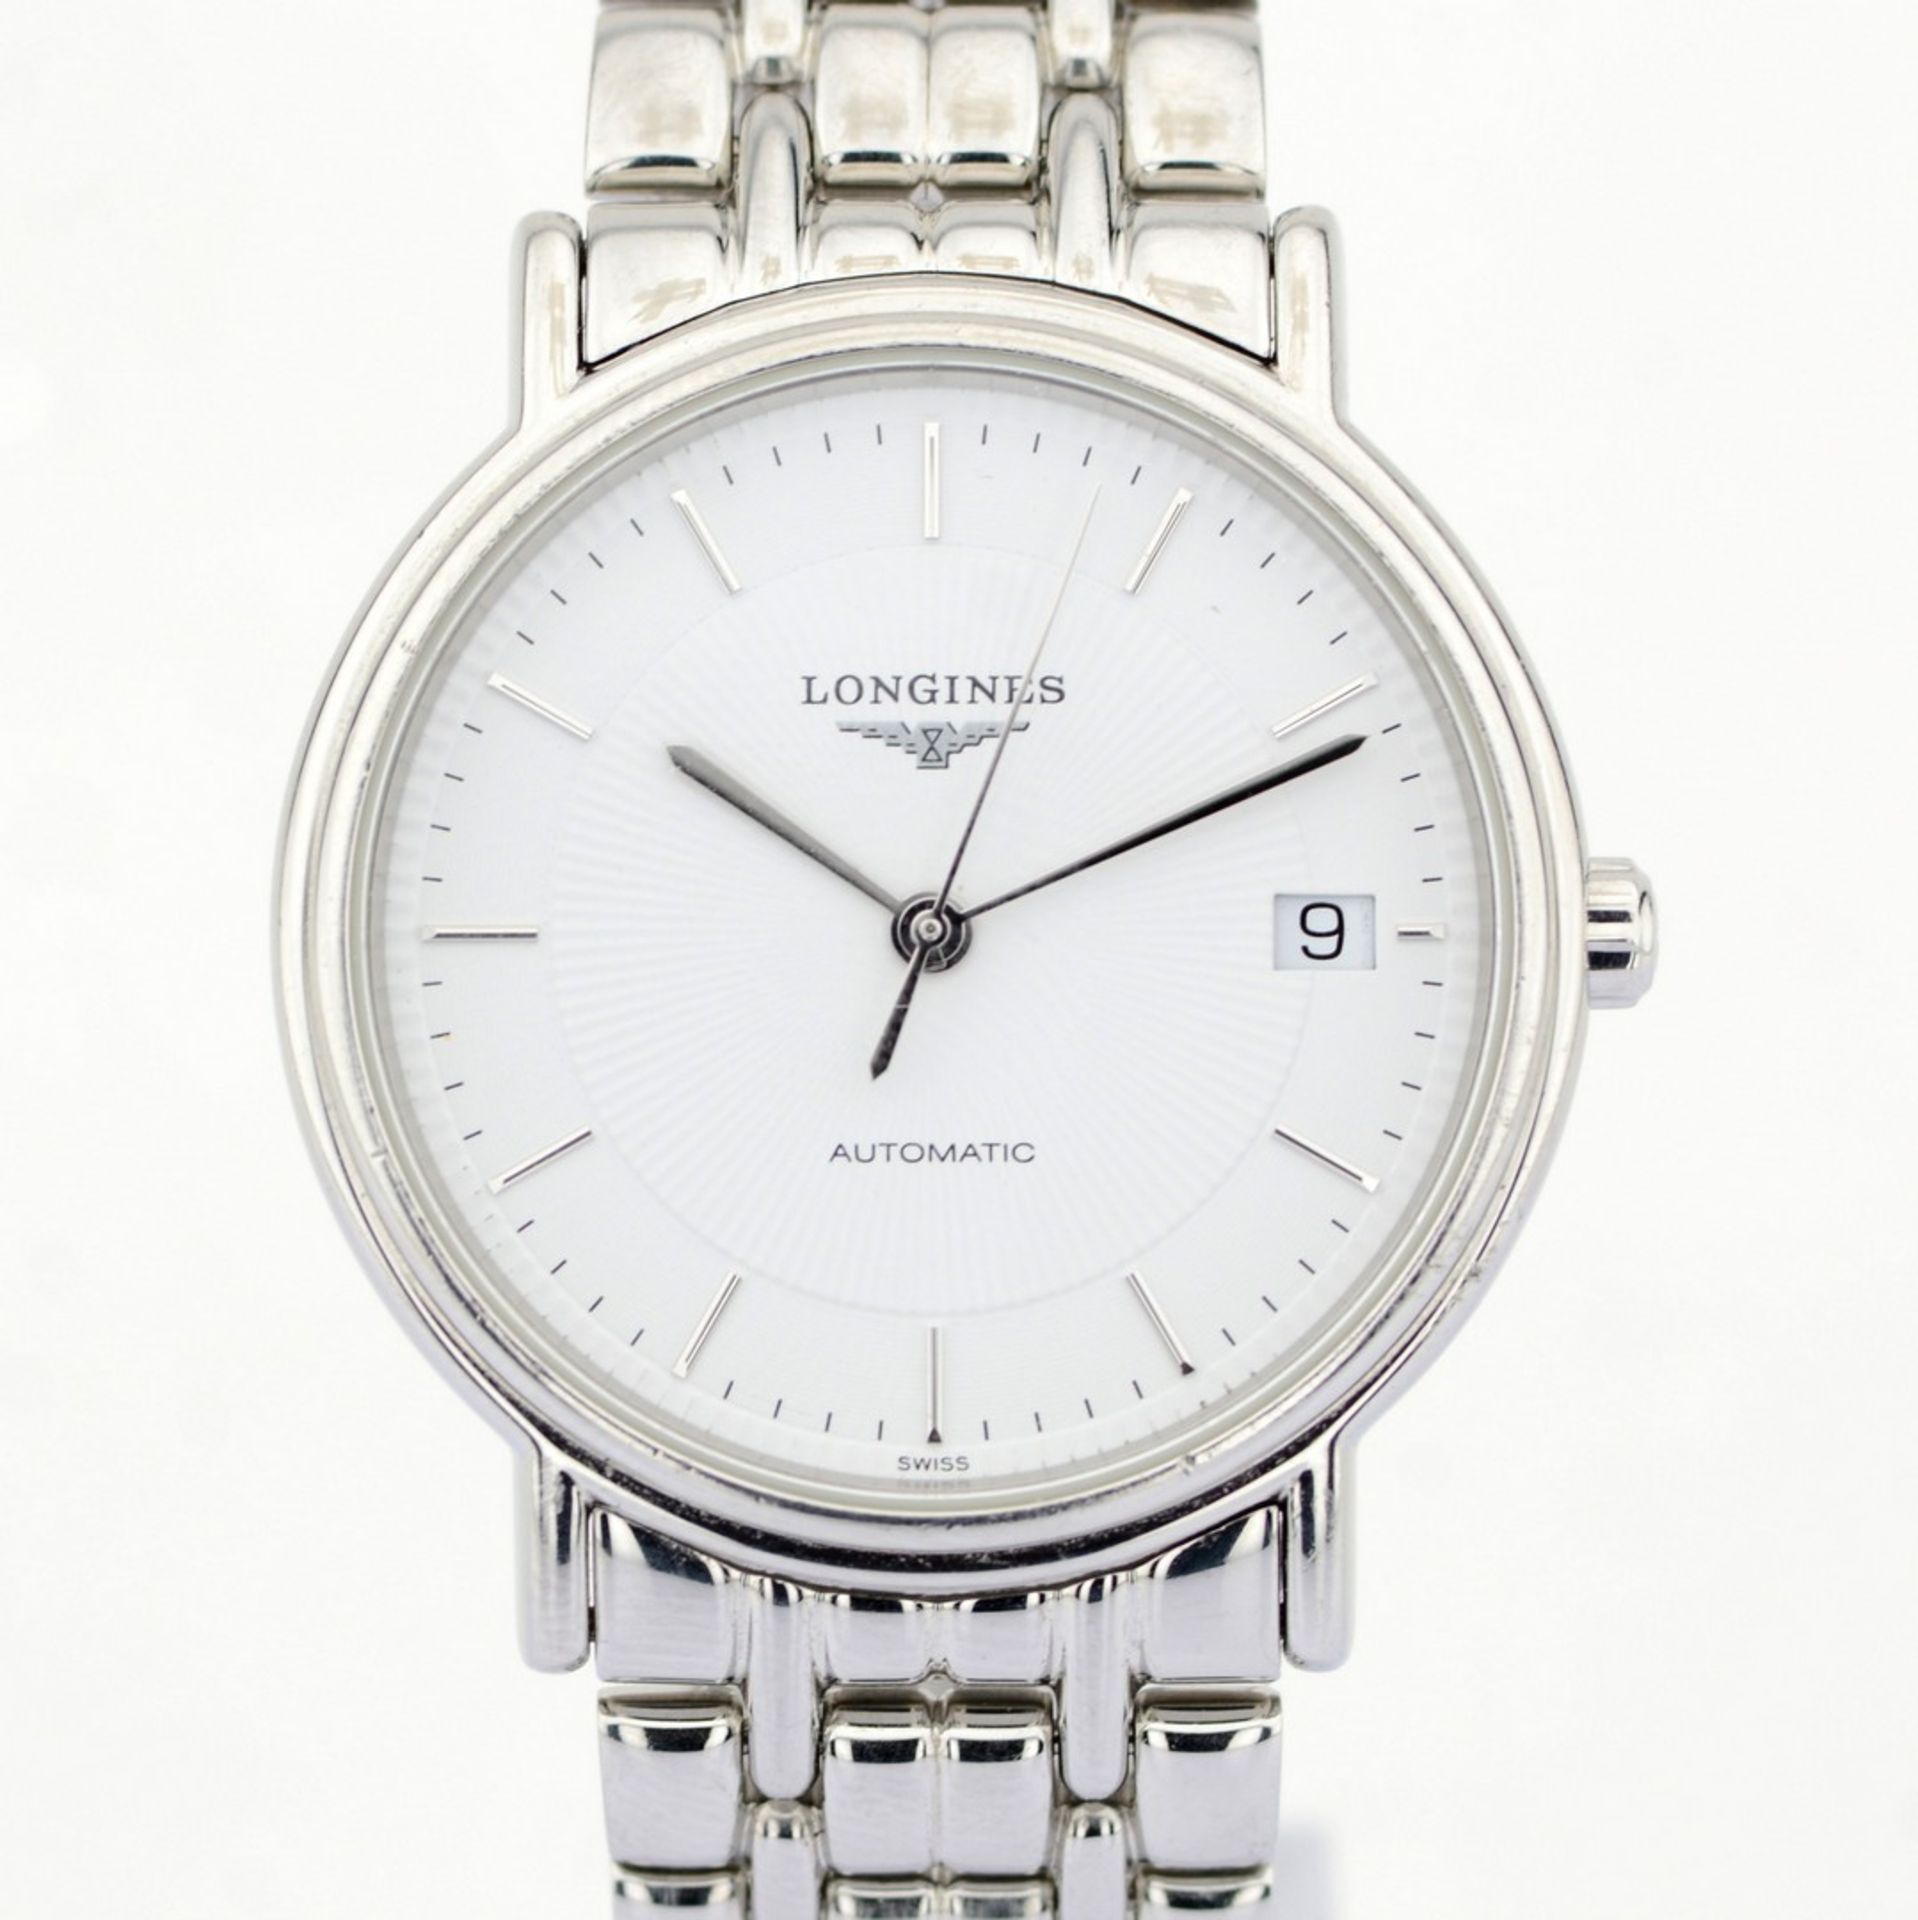 Longines / Presence Automatic Date 34 mm - Gentlmen's Steel Wrist Watch